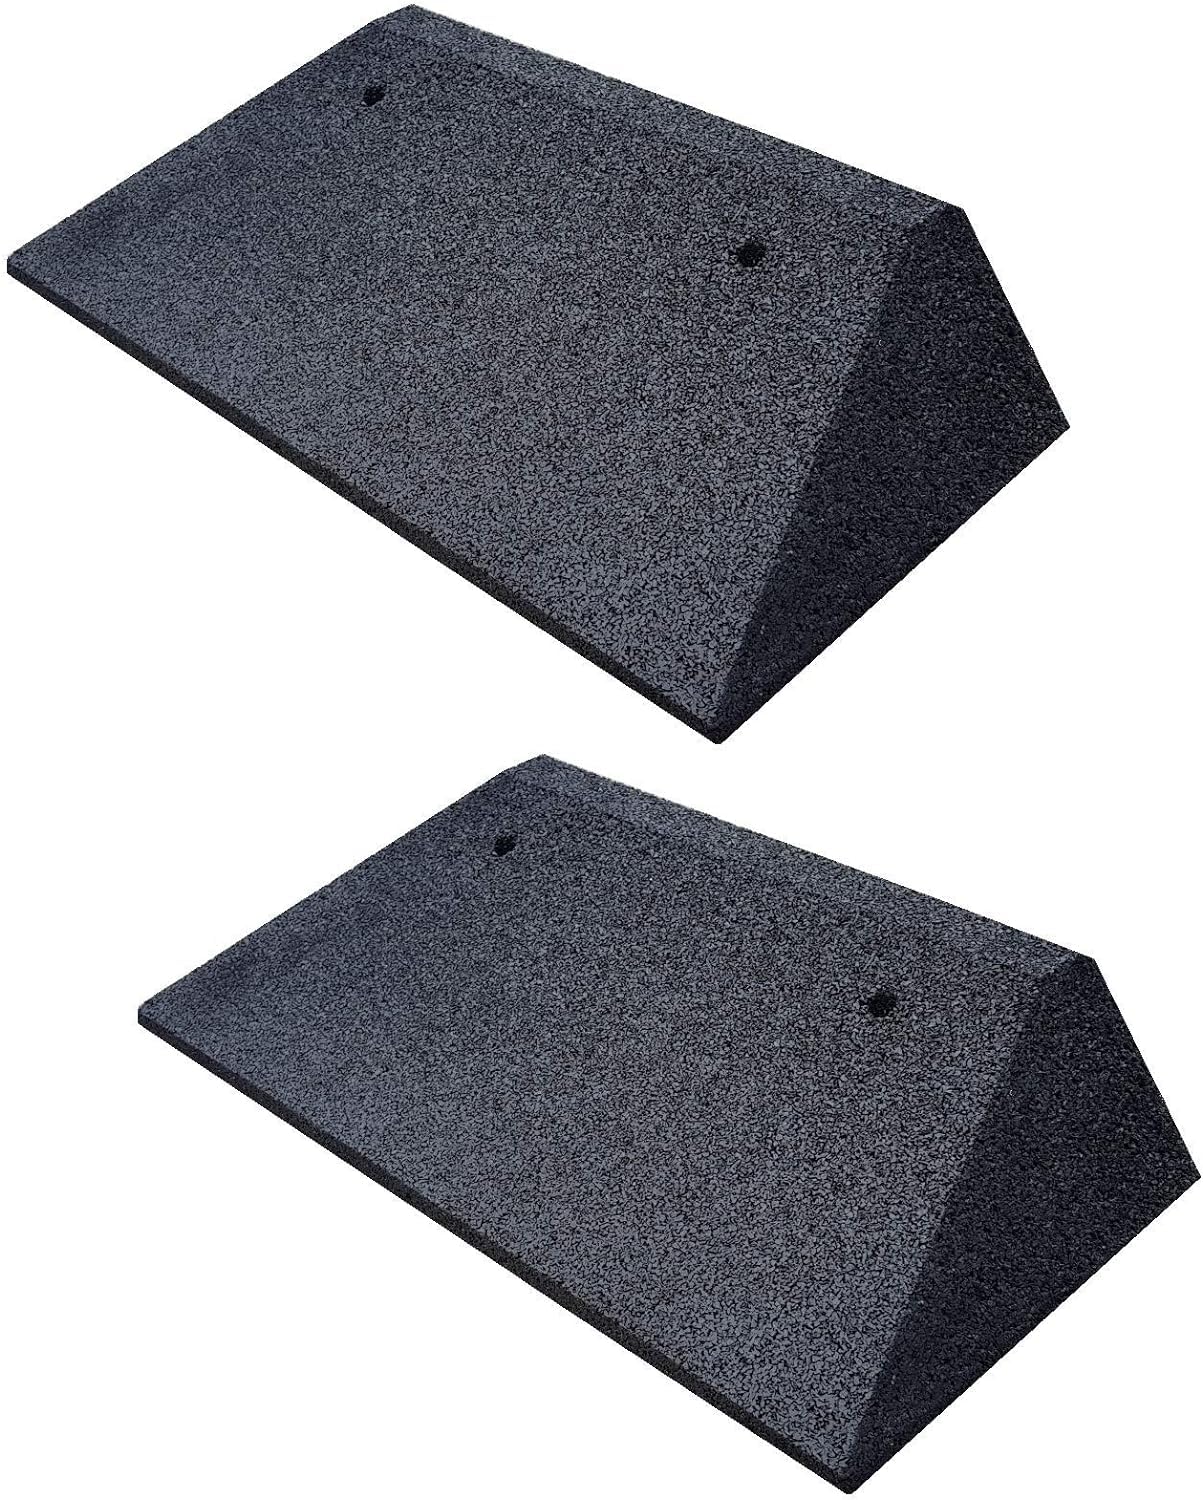 bepco Bordsteinkanten-Rampe-Set (2 Stück) + beidseitigen Schrägen, LxBxH: 50 x 25 x 4 cm aus Gummi (schwarz) Auffahrrampe,Türschwellenrampe, mit eingelagerten Unterlegscheiben zur Befestigung